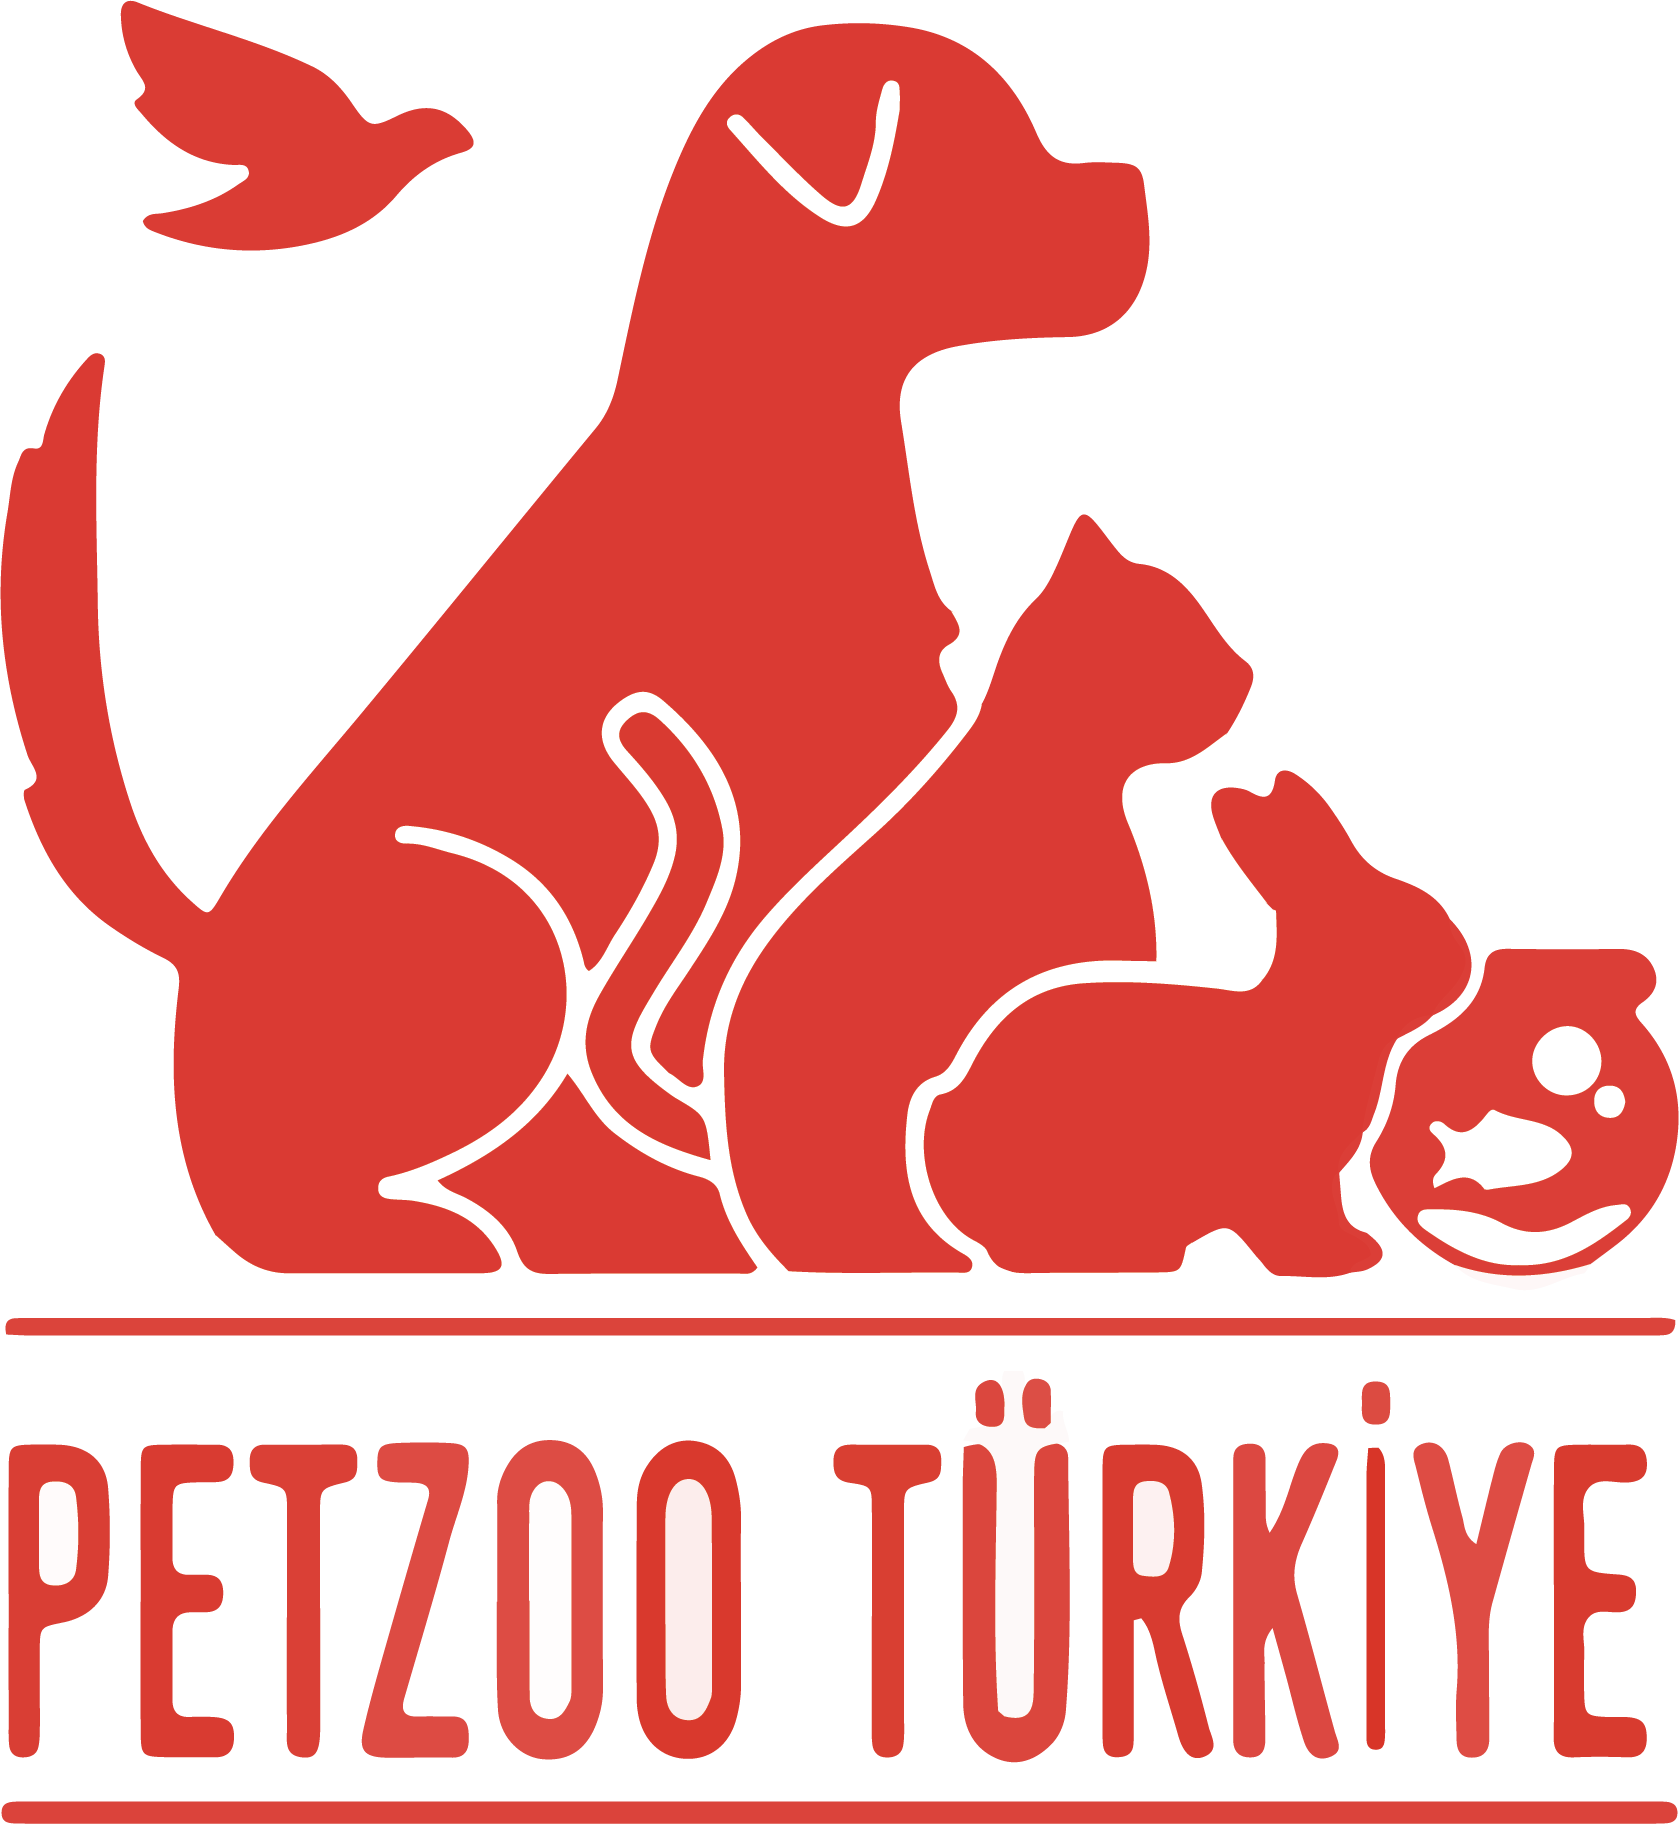 petzoo turkiye